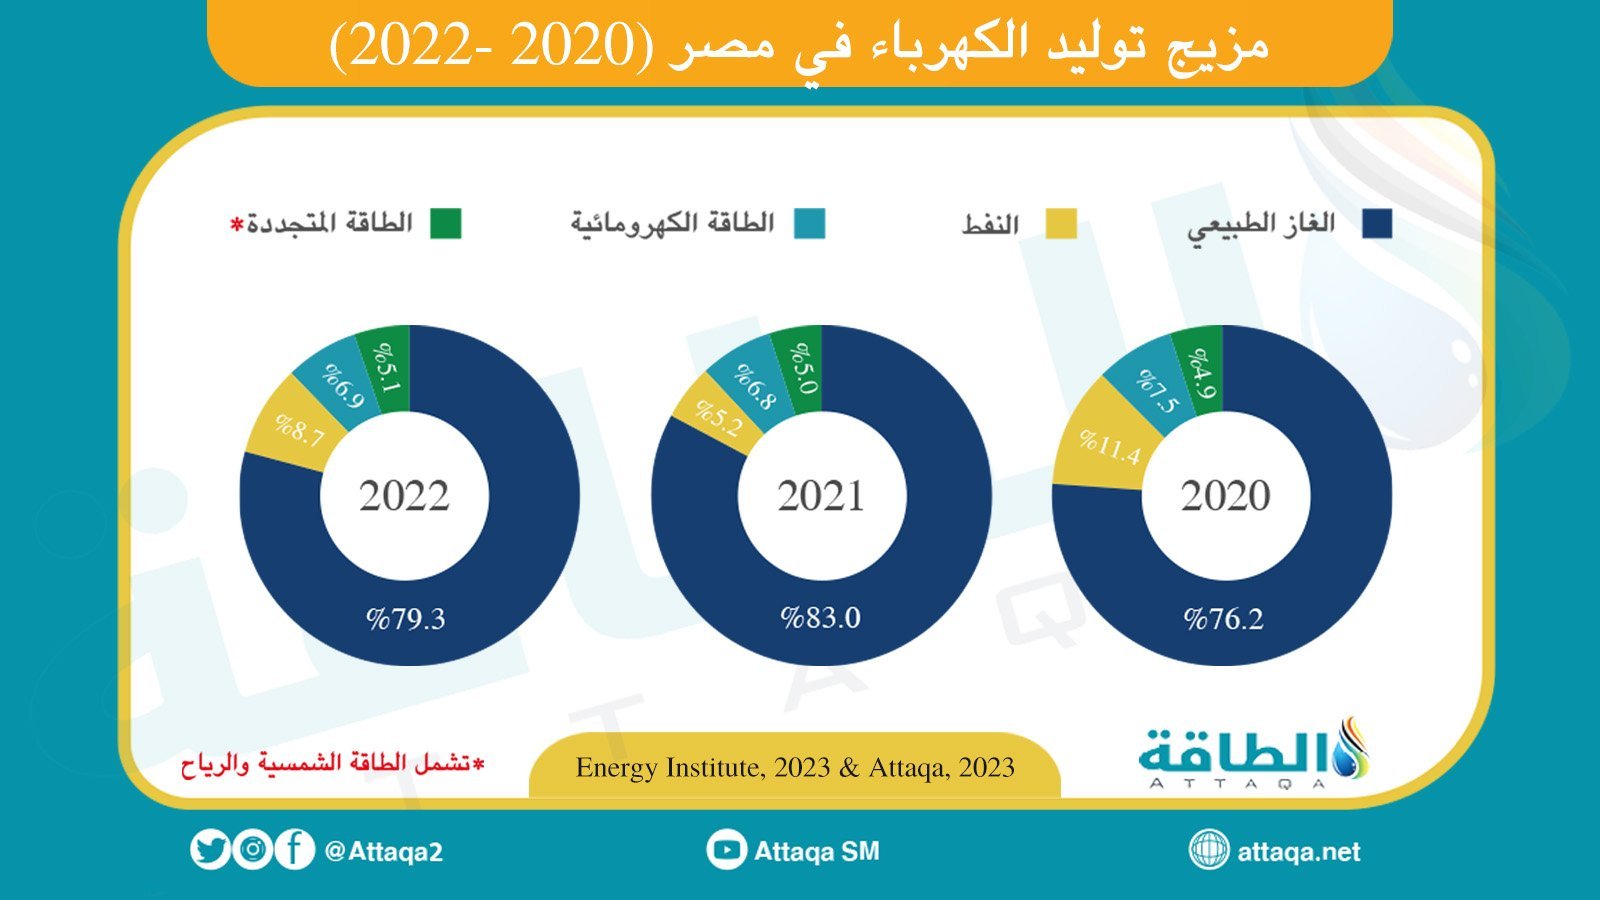 مزيج توليد الكهرباء في مصر بين عام 2020 و 2022